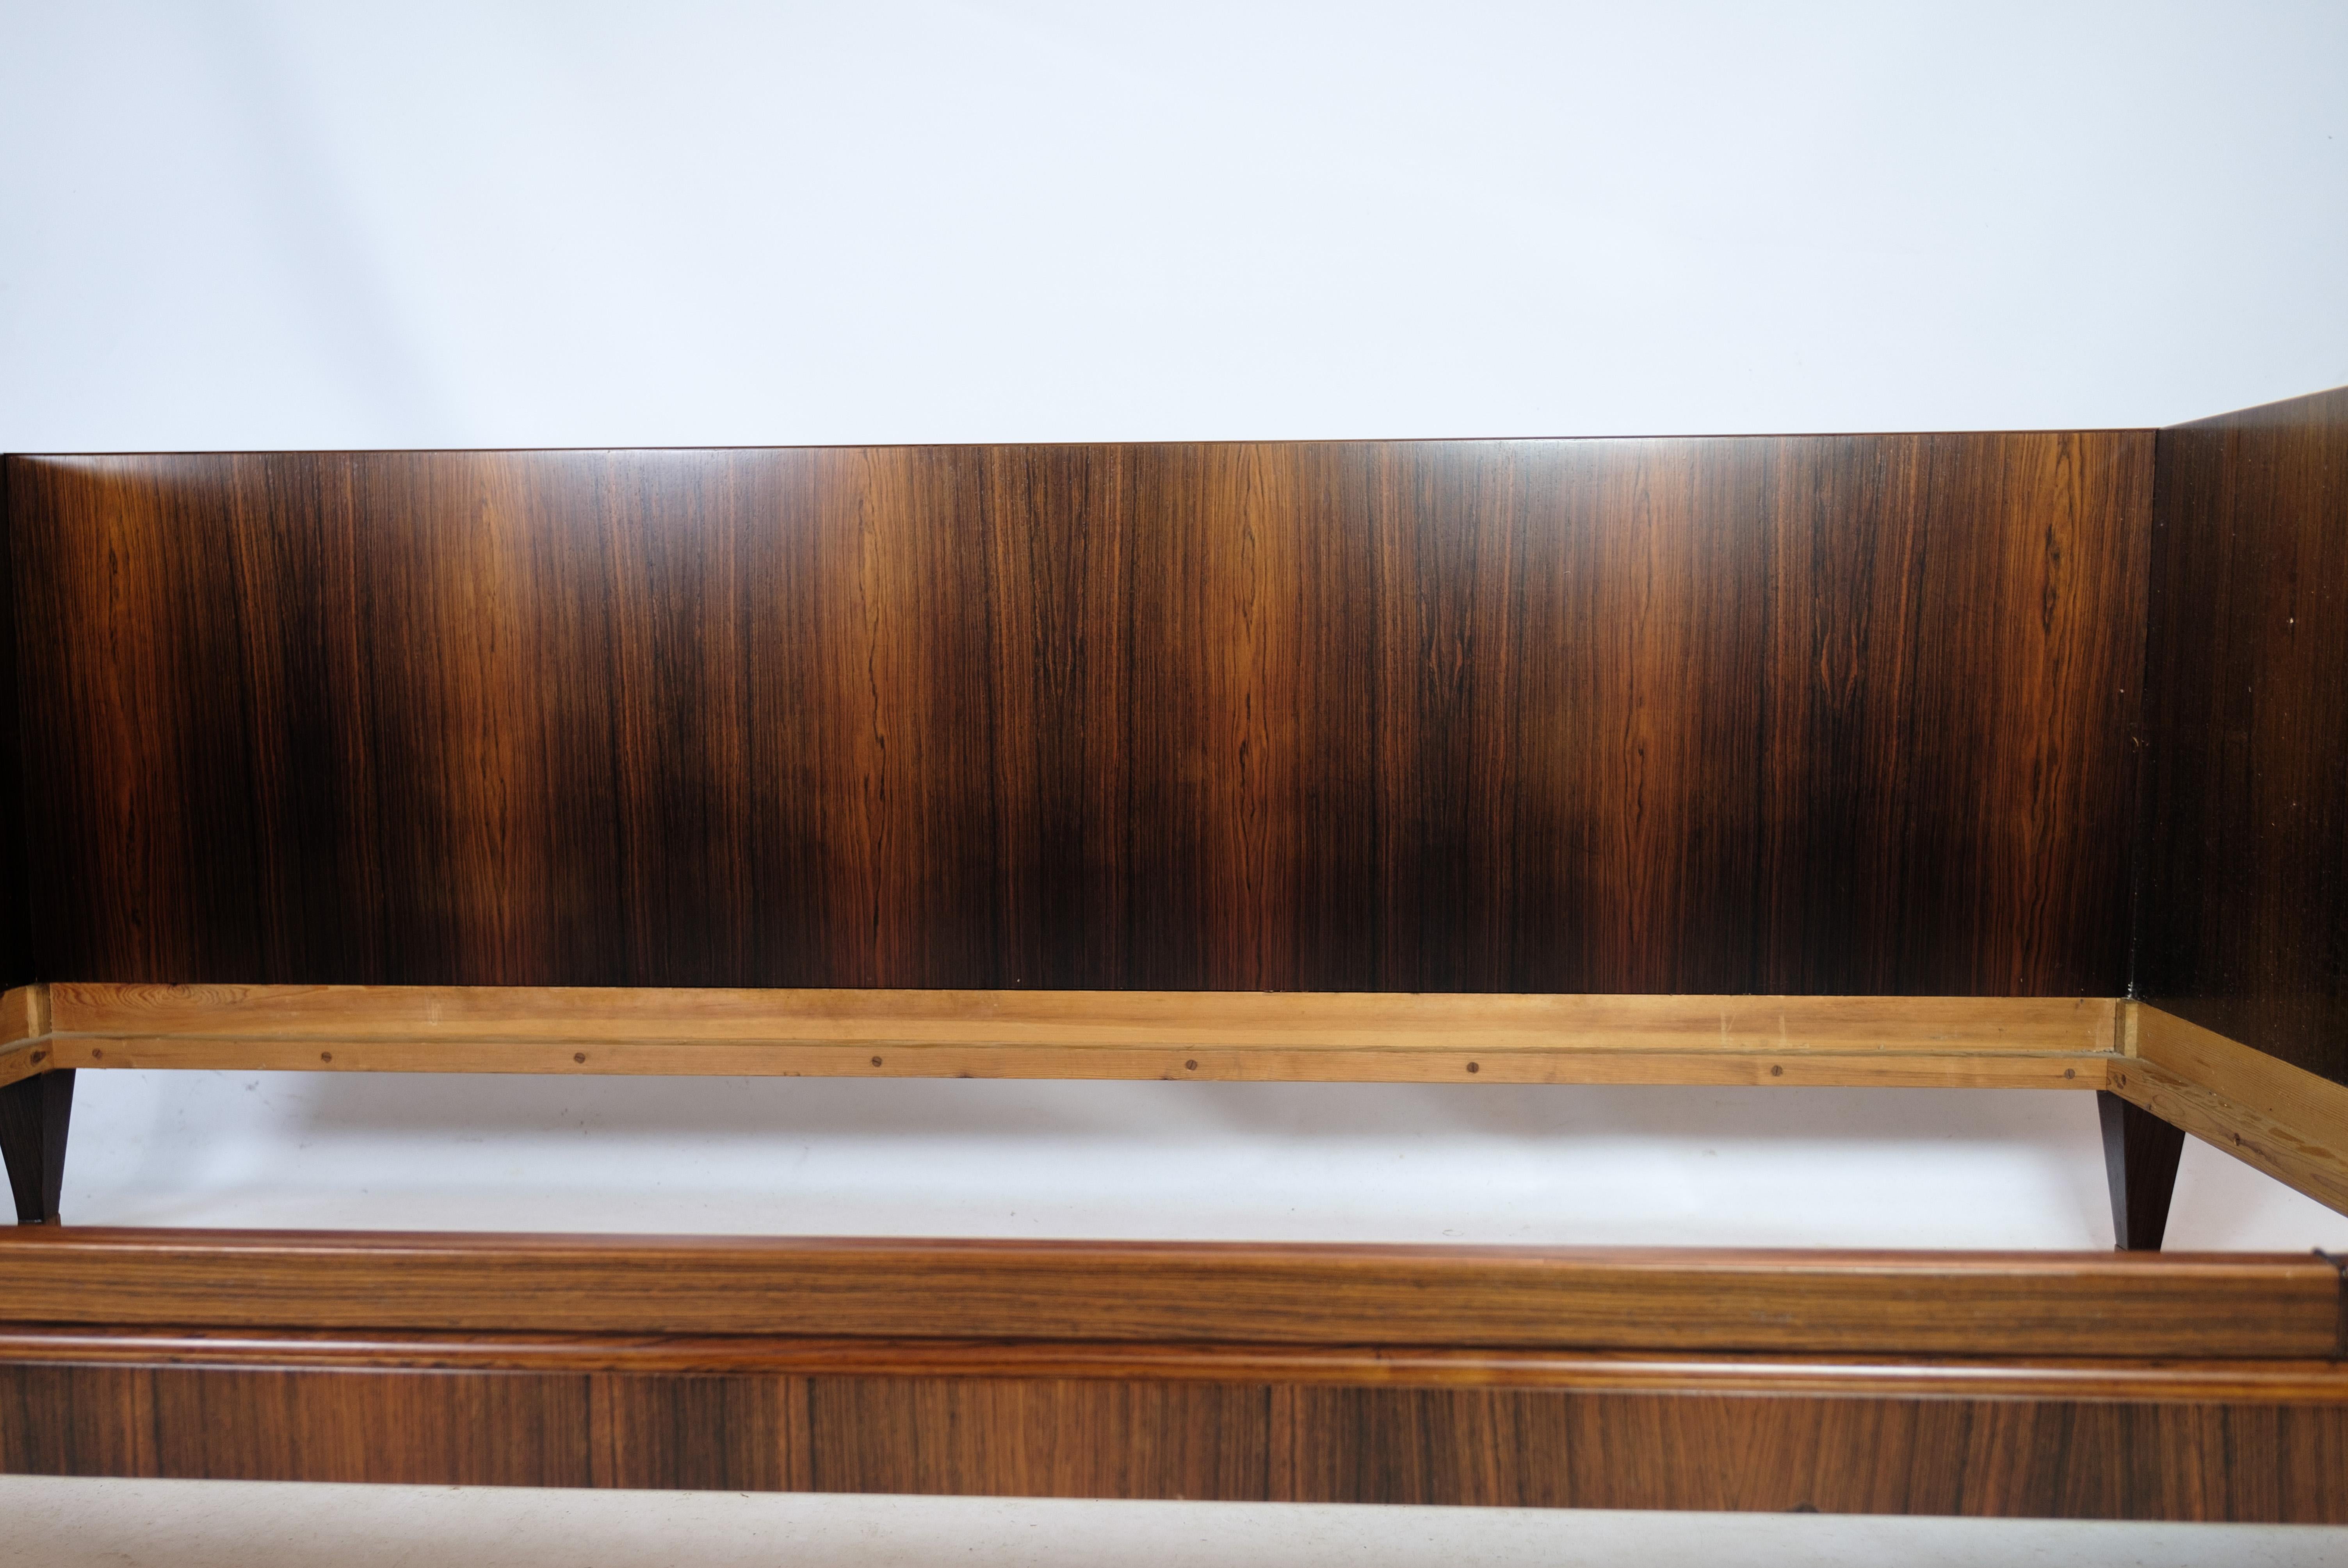 Bett aus furniertem Palisanderholz mit dänischem Design aus den 1960er Jahren. Ist in sehr gutem Zustand.
Maße in cm: H:74.5 B:200 T:98 - 2 Stück auf Lager